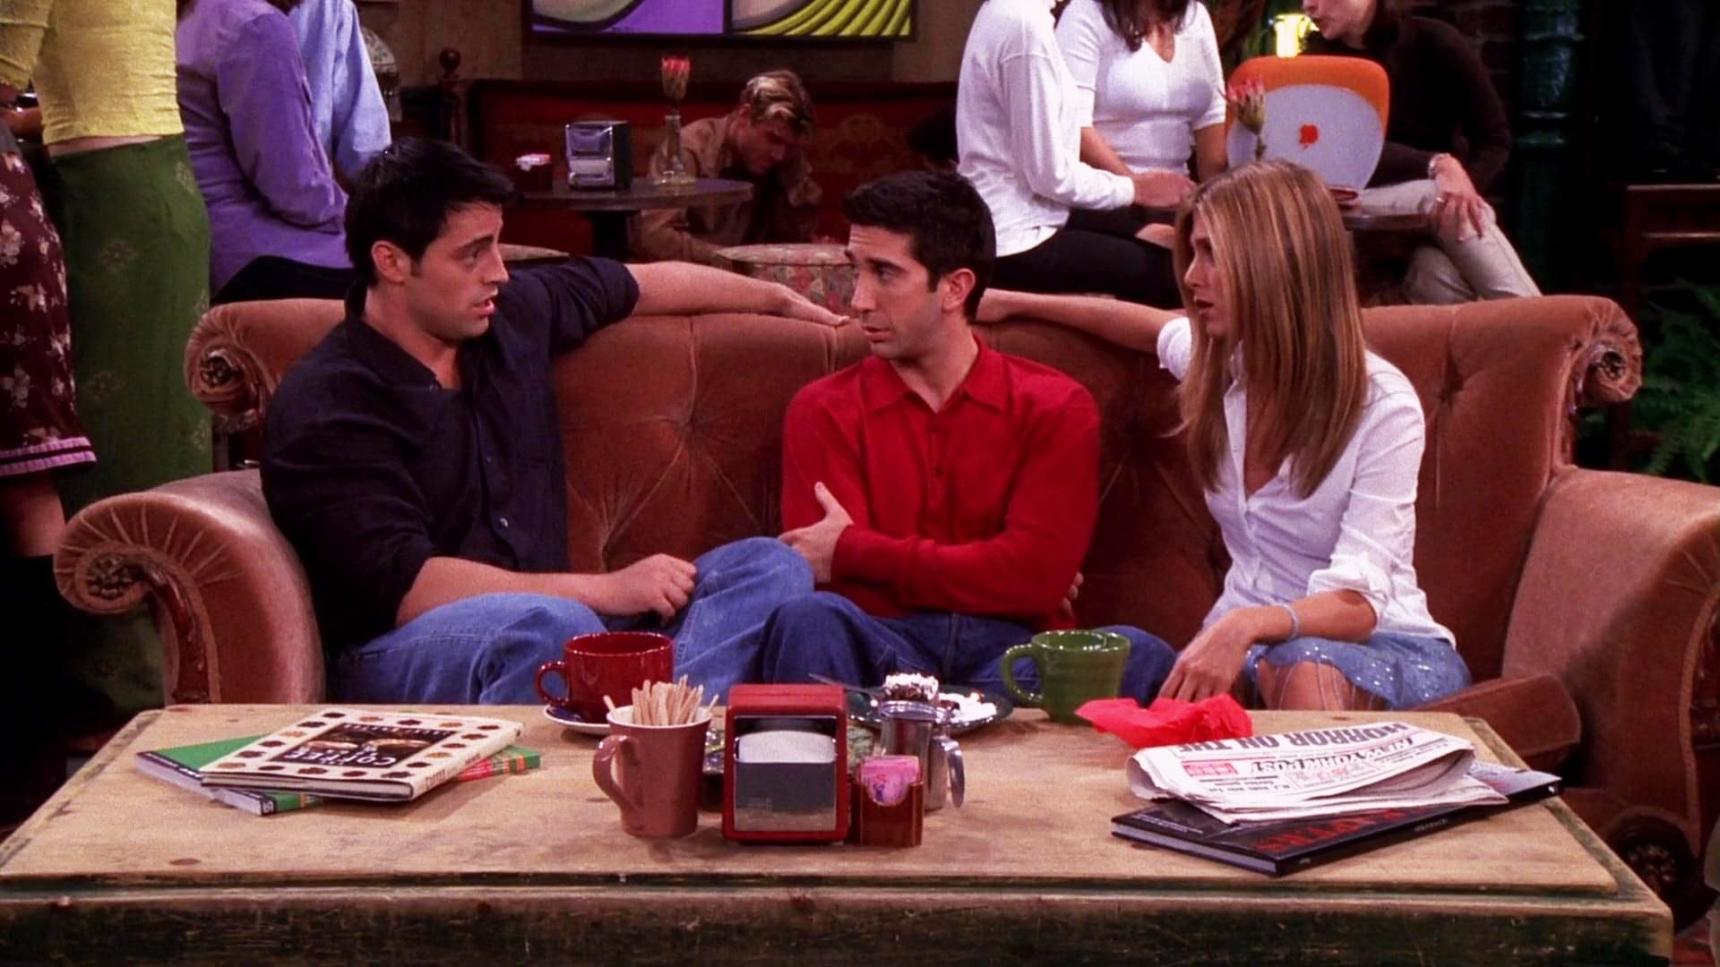 Poster del episodio 3 de Friends online